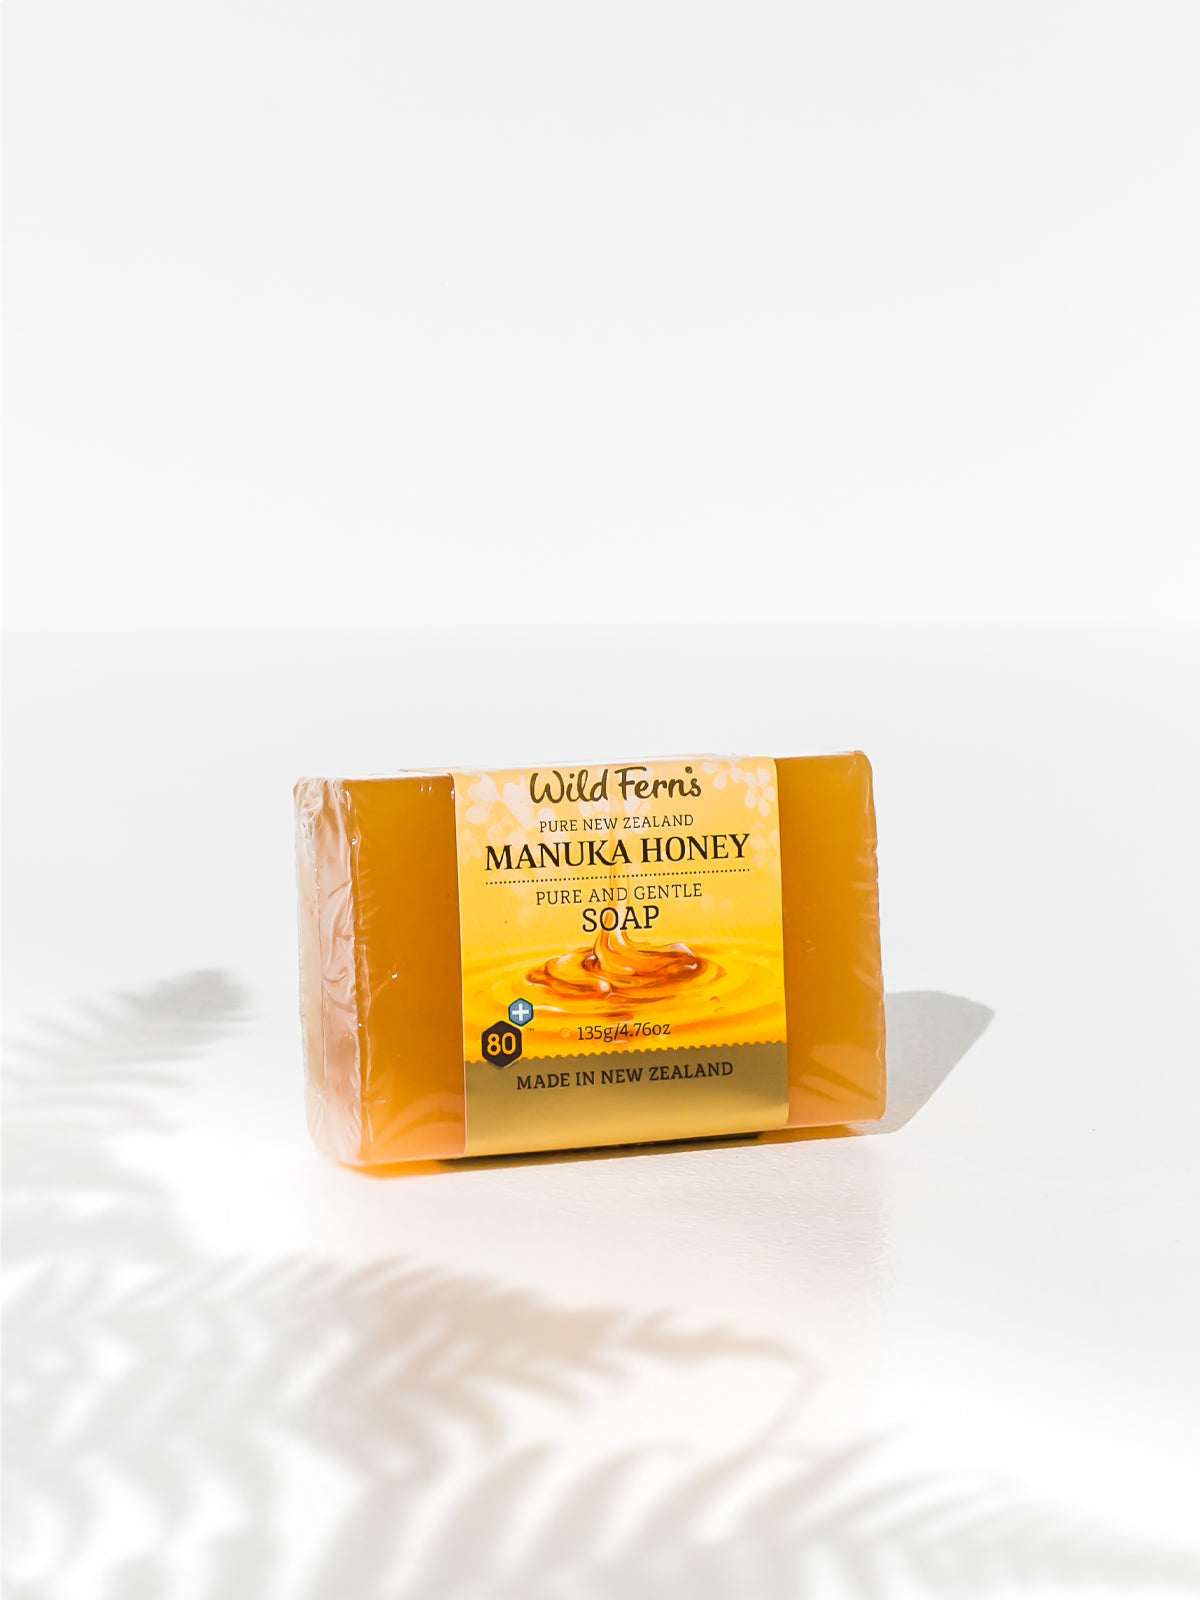 Wild Ferns Manuka Honey Pure & Gentle Soap, 135g Lifestyle 1